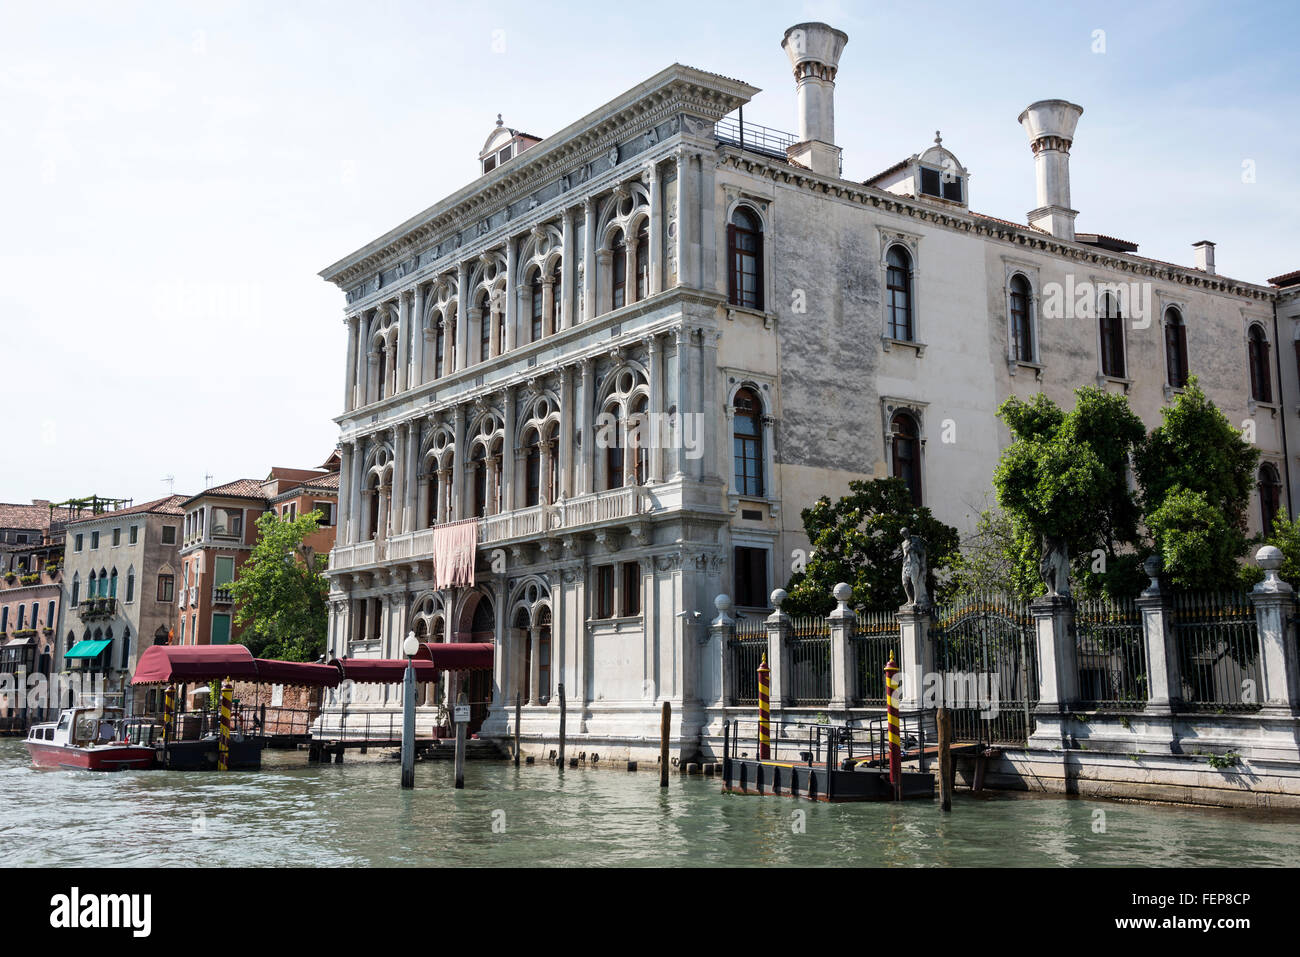 Casino di Venezia (Venice Casino) on the banks of the Canale Grande ...